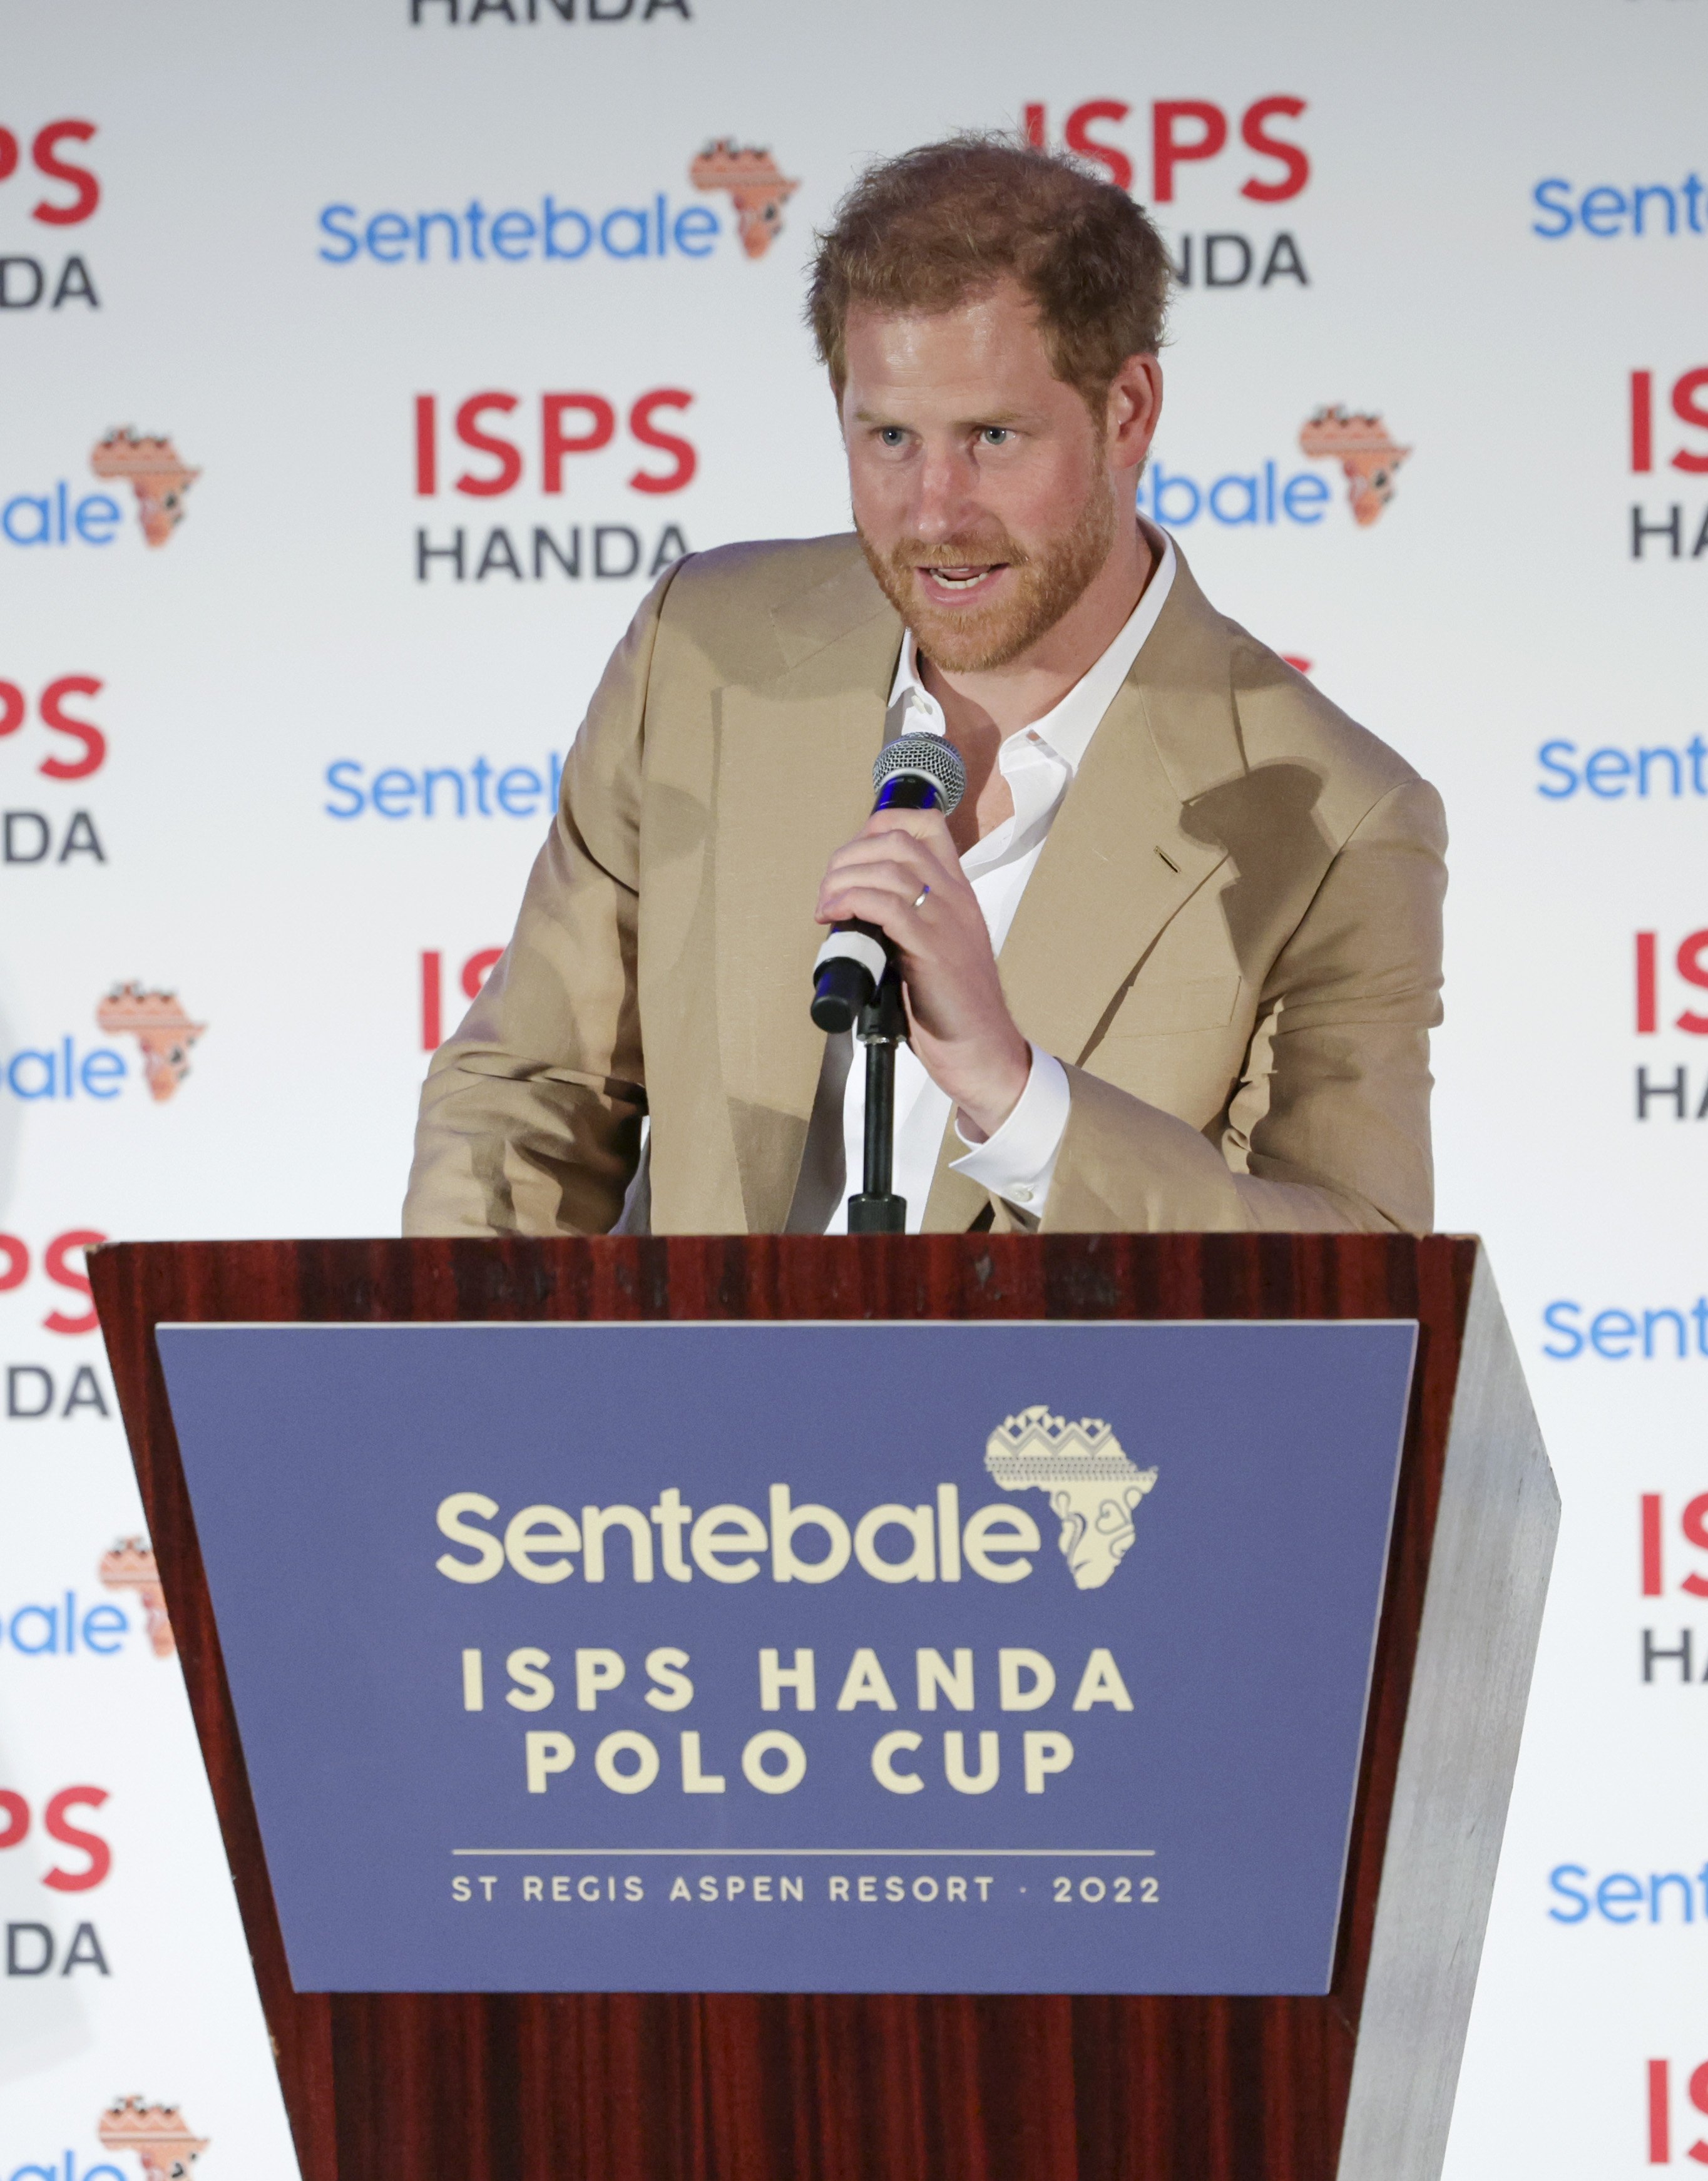 El príncipe Harry, duque de Sussex, hablando en la Sentebale ISPS Handa Polo Cup, el 25 de agosto de 2022 en Aspen, Colorado. | Foto: Getty Images